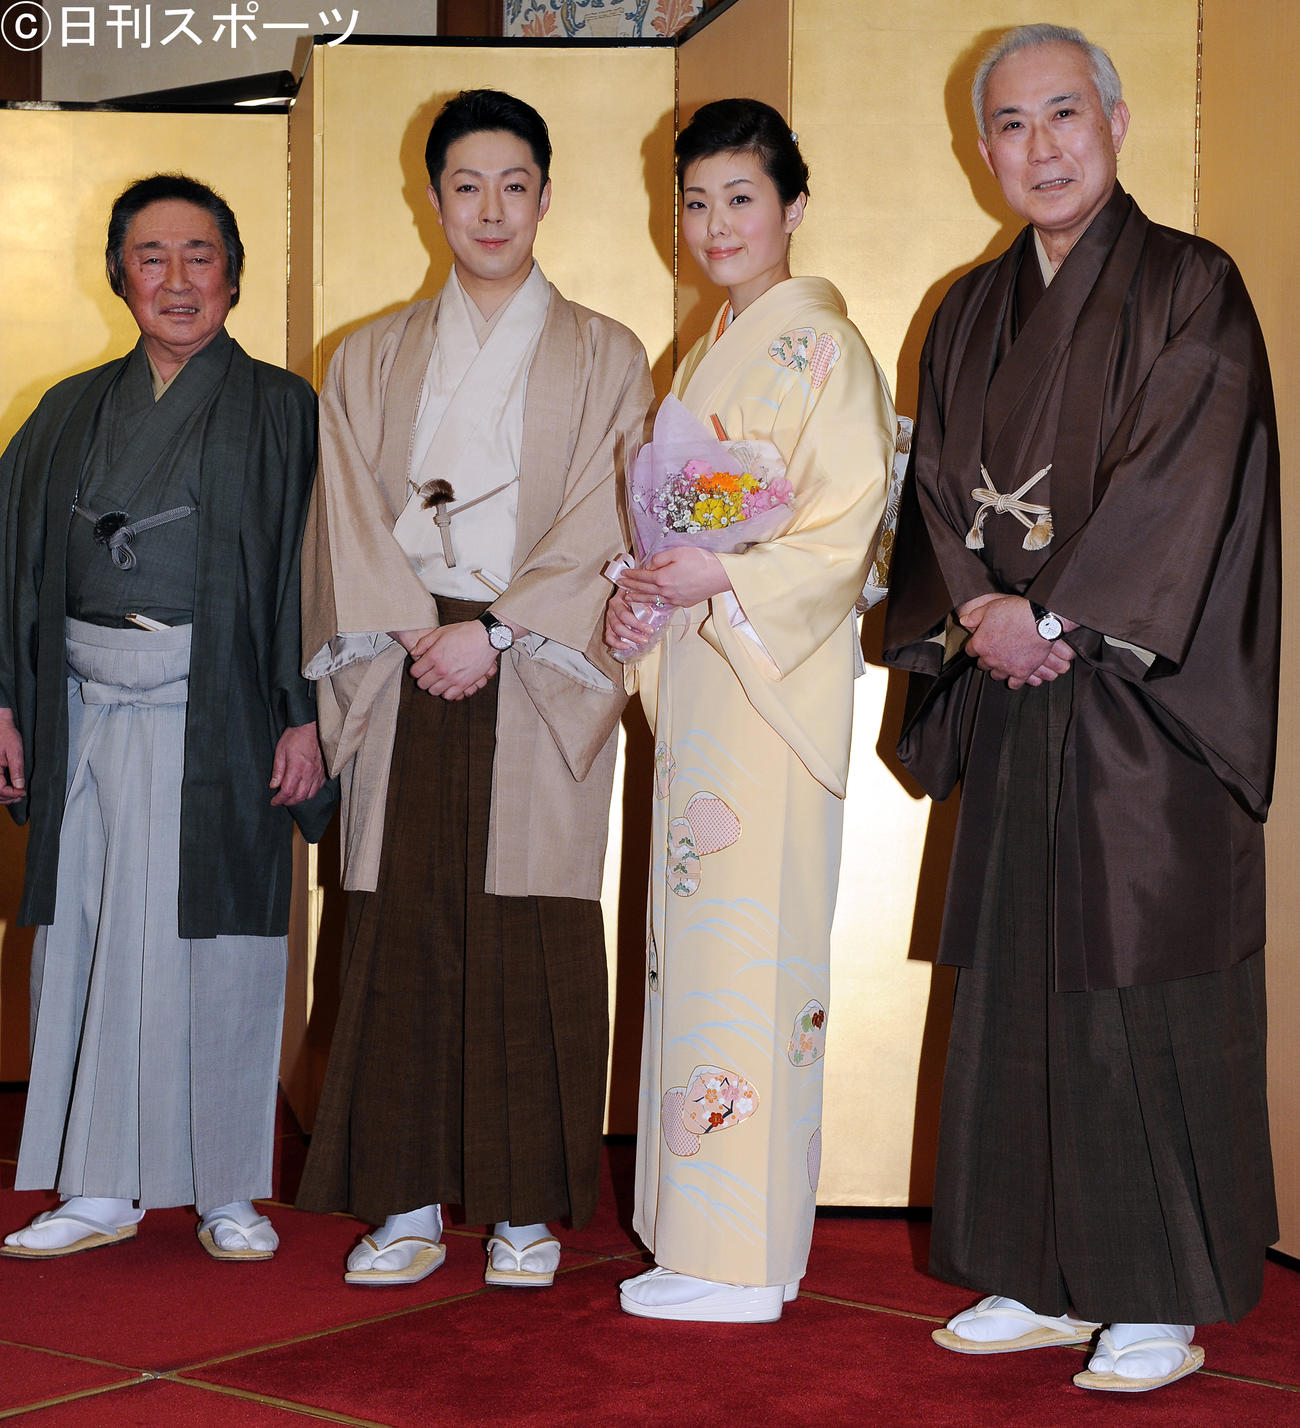 13年1月、尾上菊之助・波野瓔子婚約報告会見で、そろって笑顔を見せる尾上菊之助（中央左）と婚約者の波野瓔子さん（中央右）。左は菊之助の父尾上菊五郎、右は瓔子さんの父中村吉右衛門さん（2013年1月撮影）